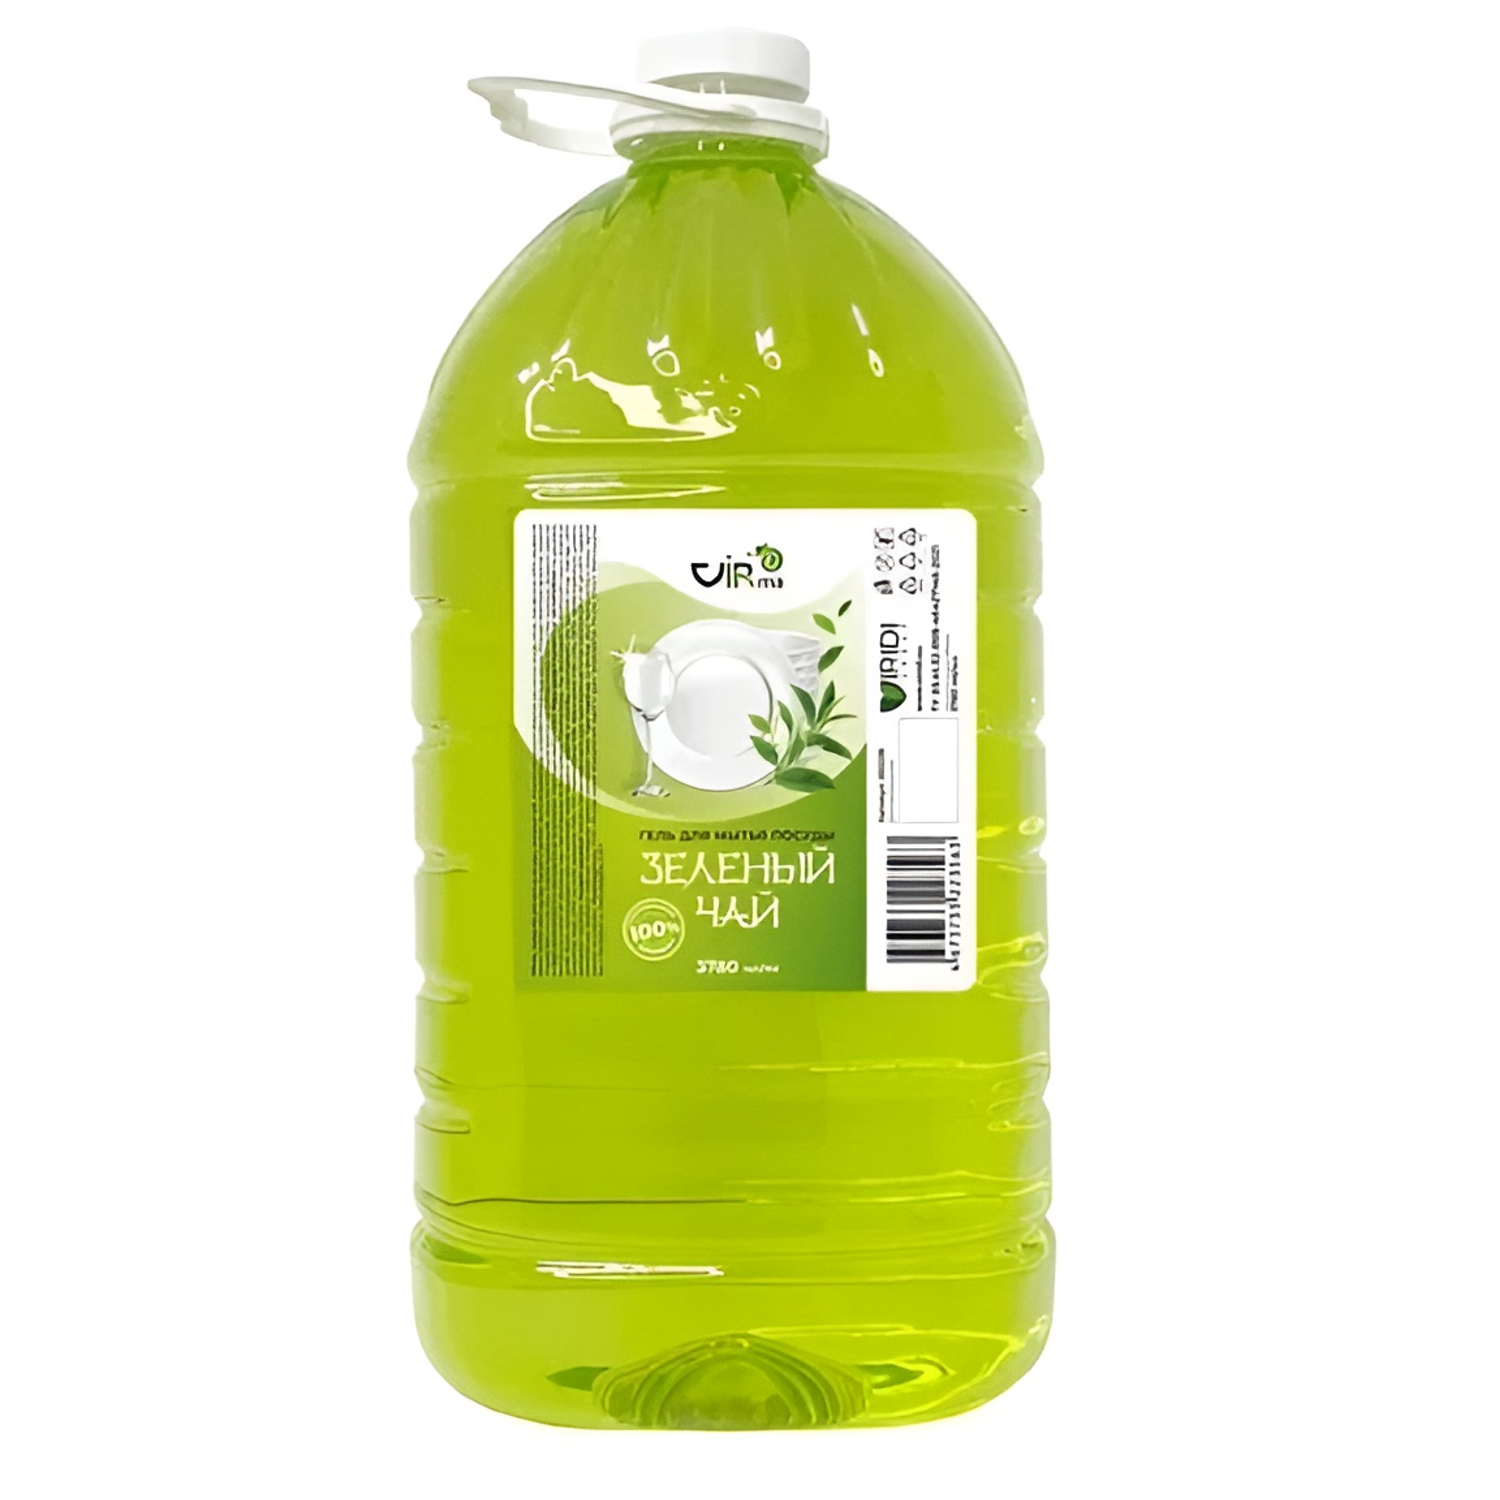 Средство для мытья посуды VIRma Зеленый чай 3.78л. - фото 1